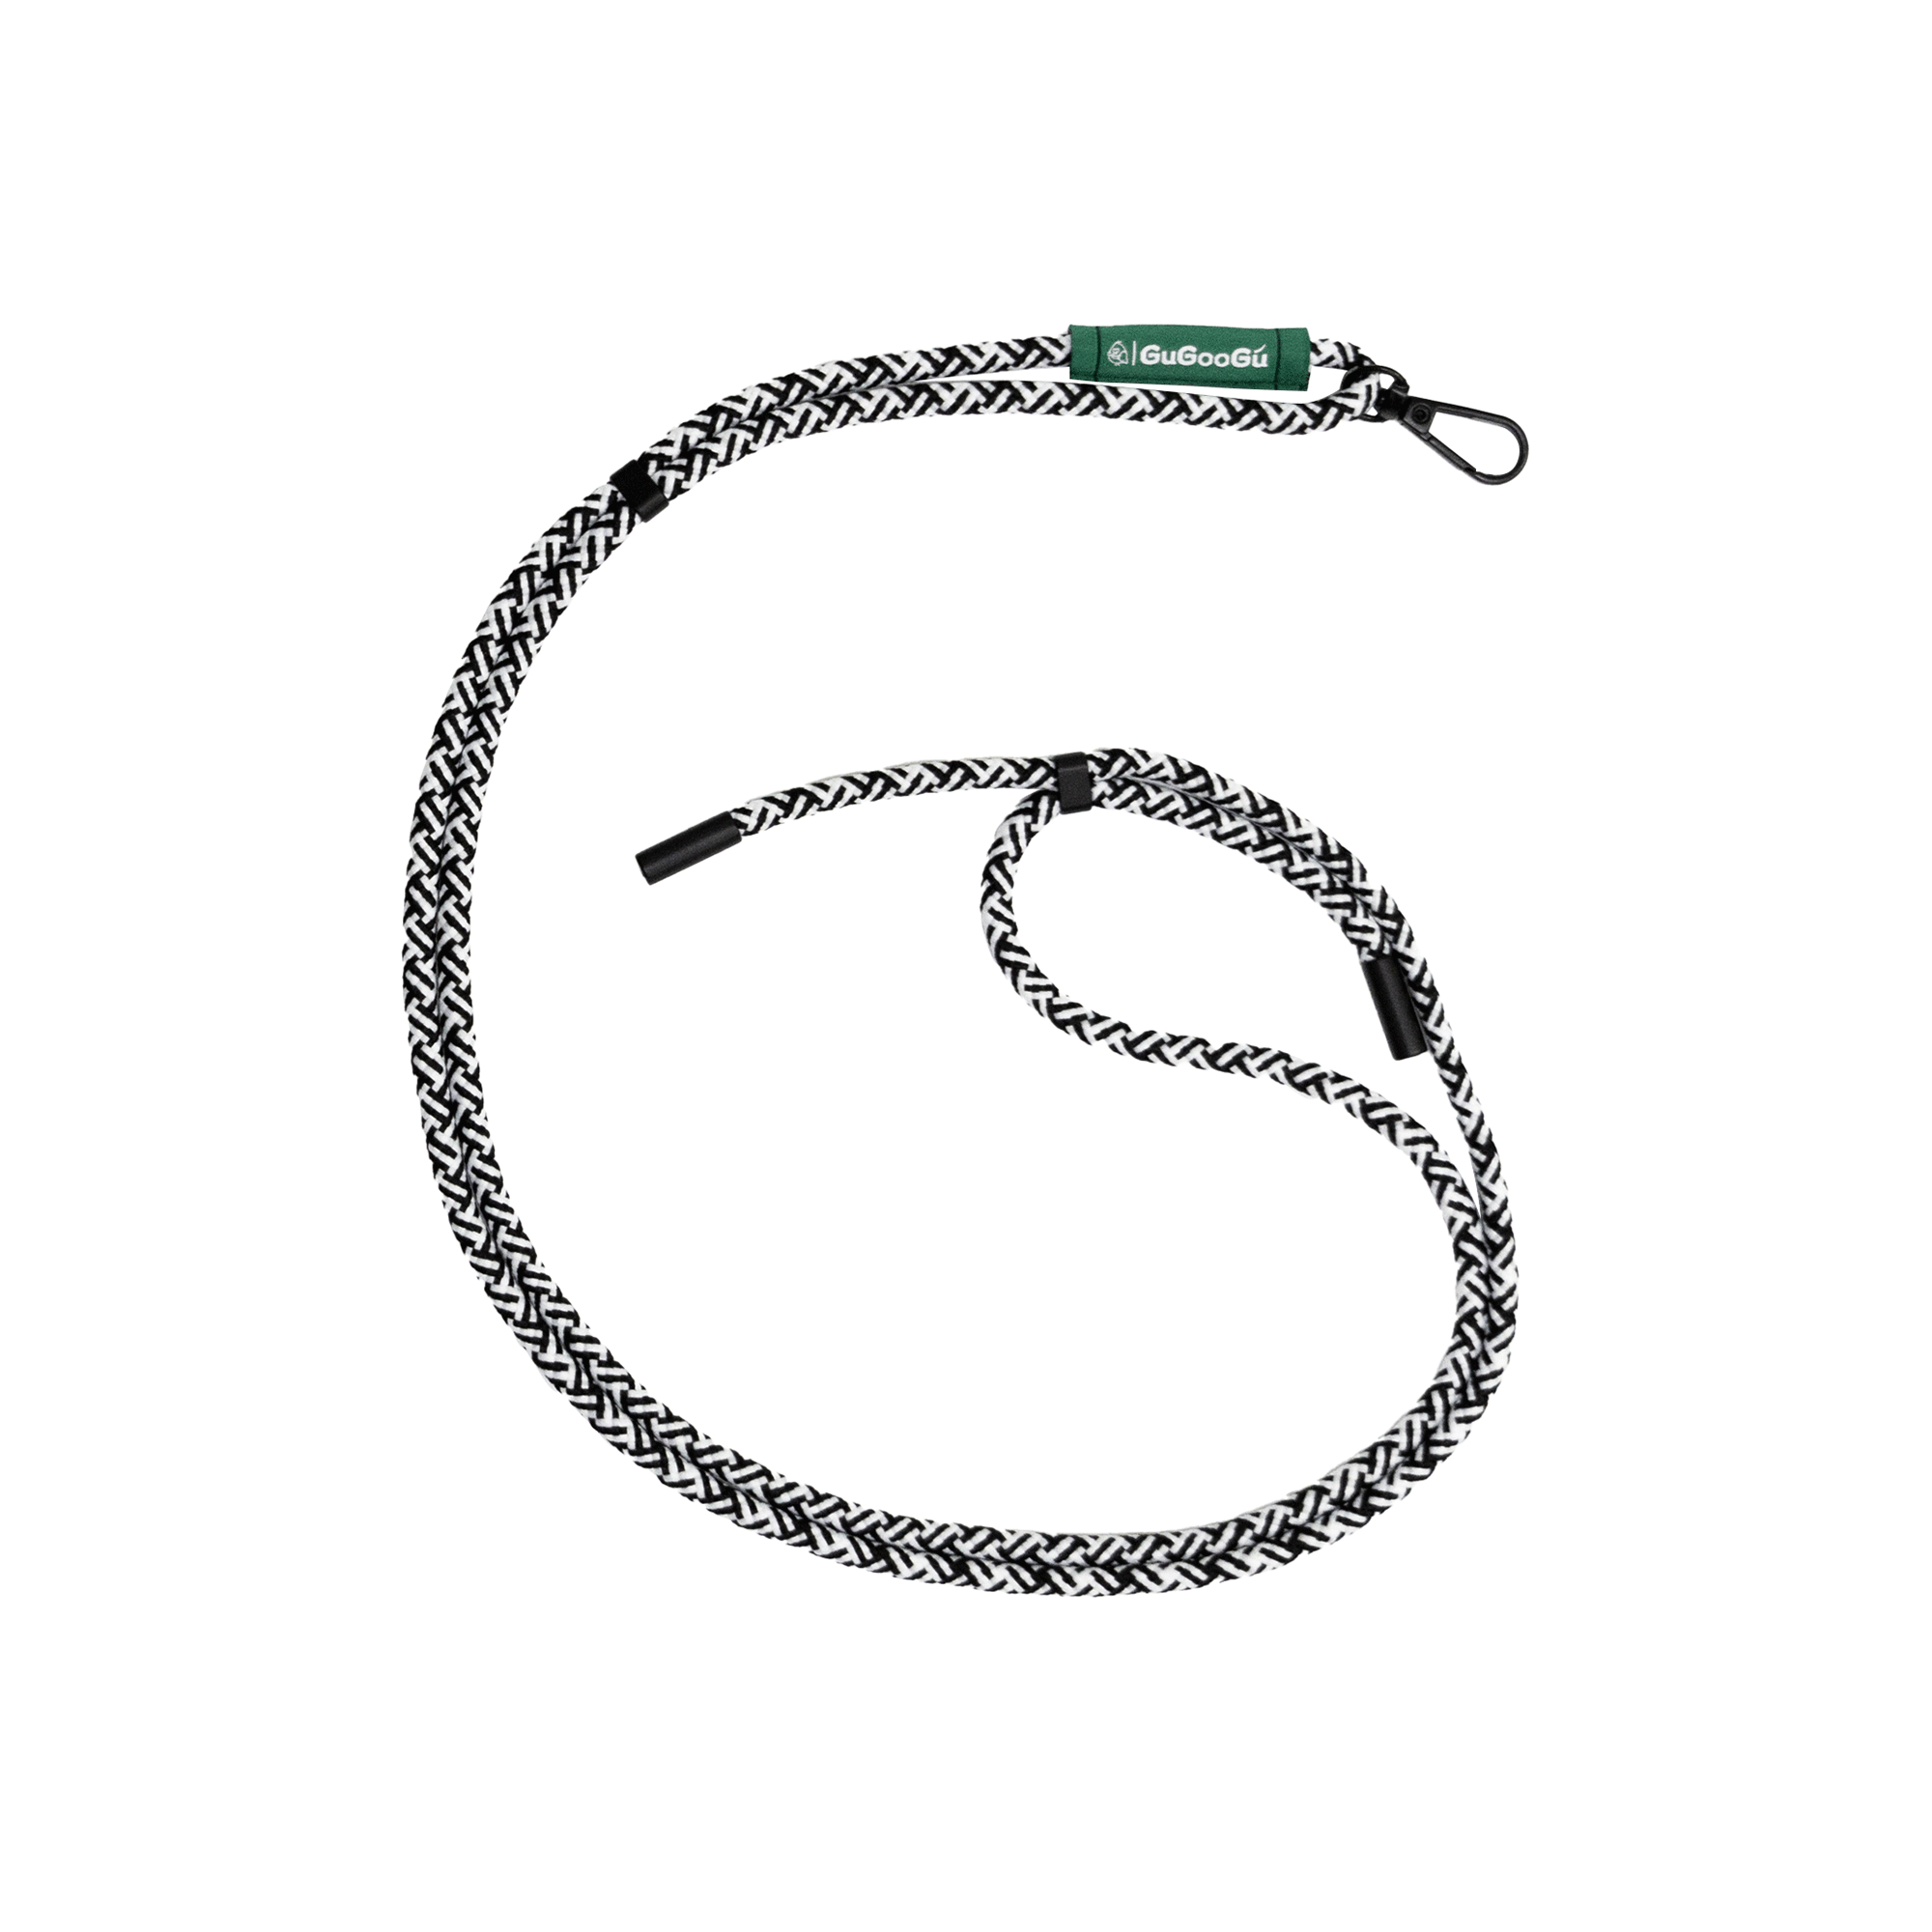 這是GUGOOGU的白黑拼色的手機繩。